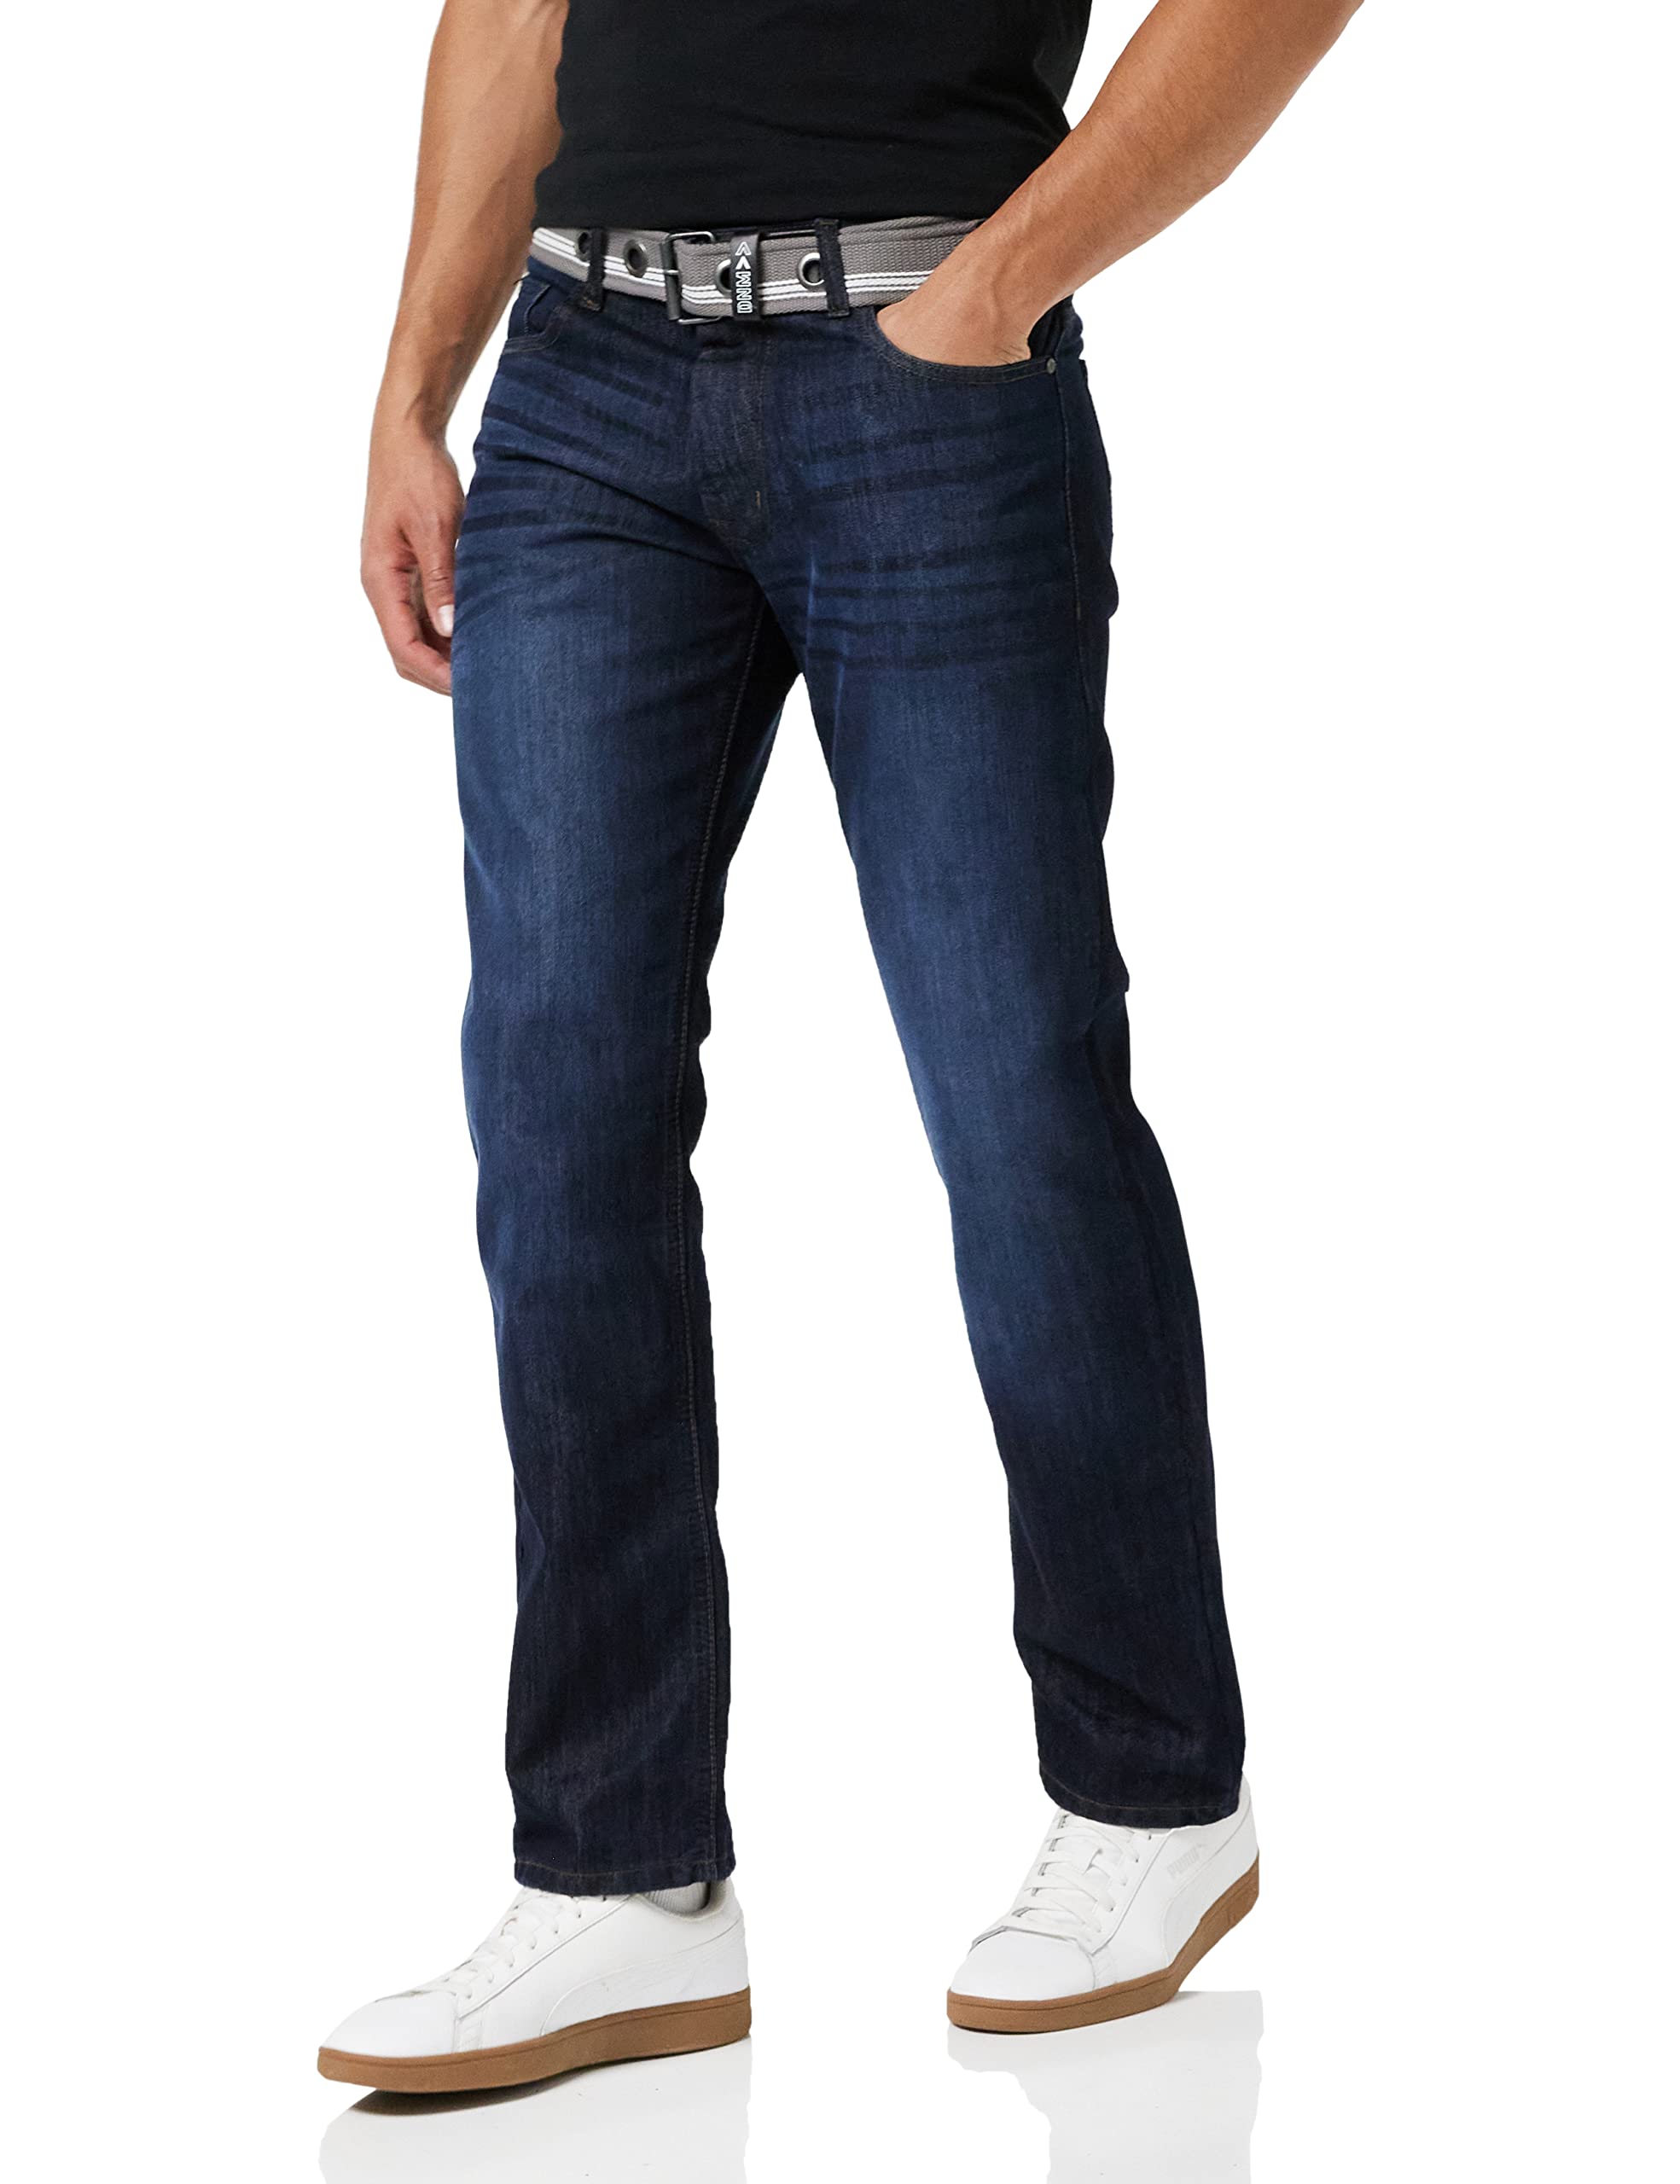 Enzo Herren EZ324 Straight Jeans, Blue (Darkwash), W46/L32 (Size:46 R)